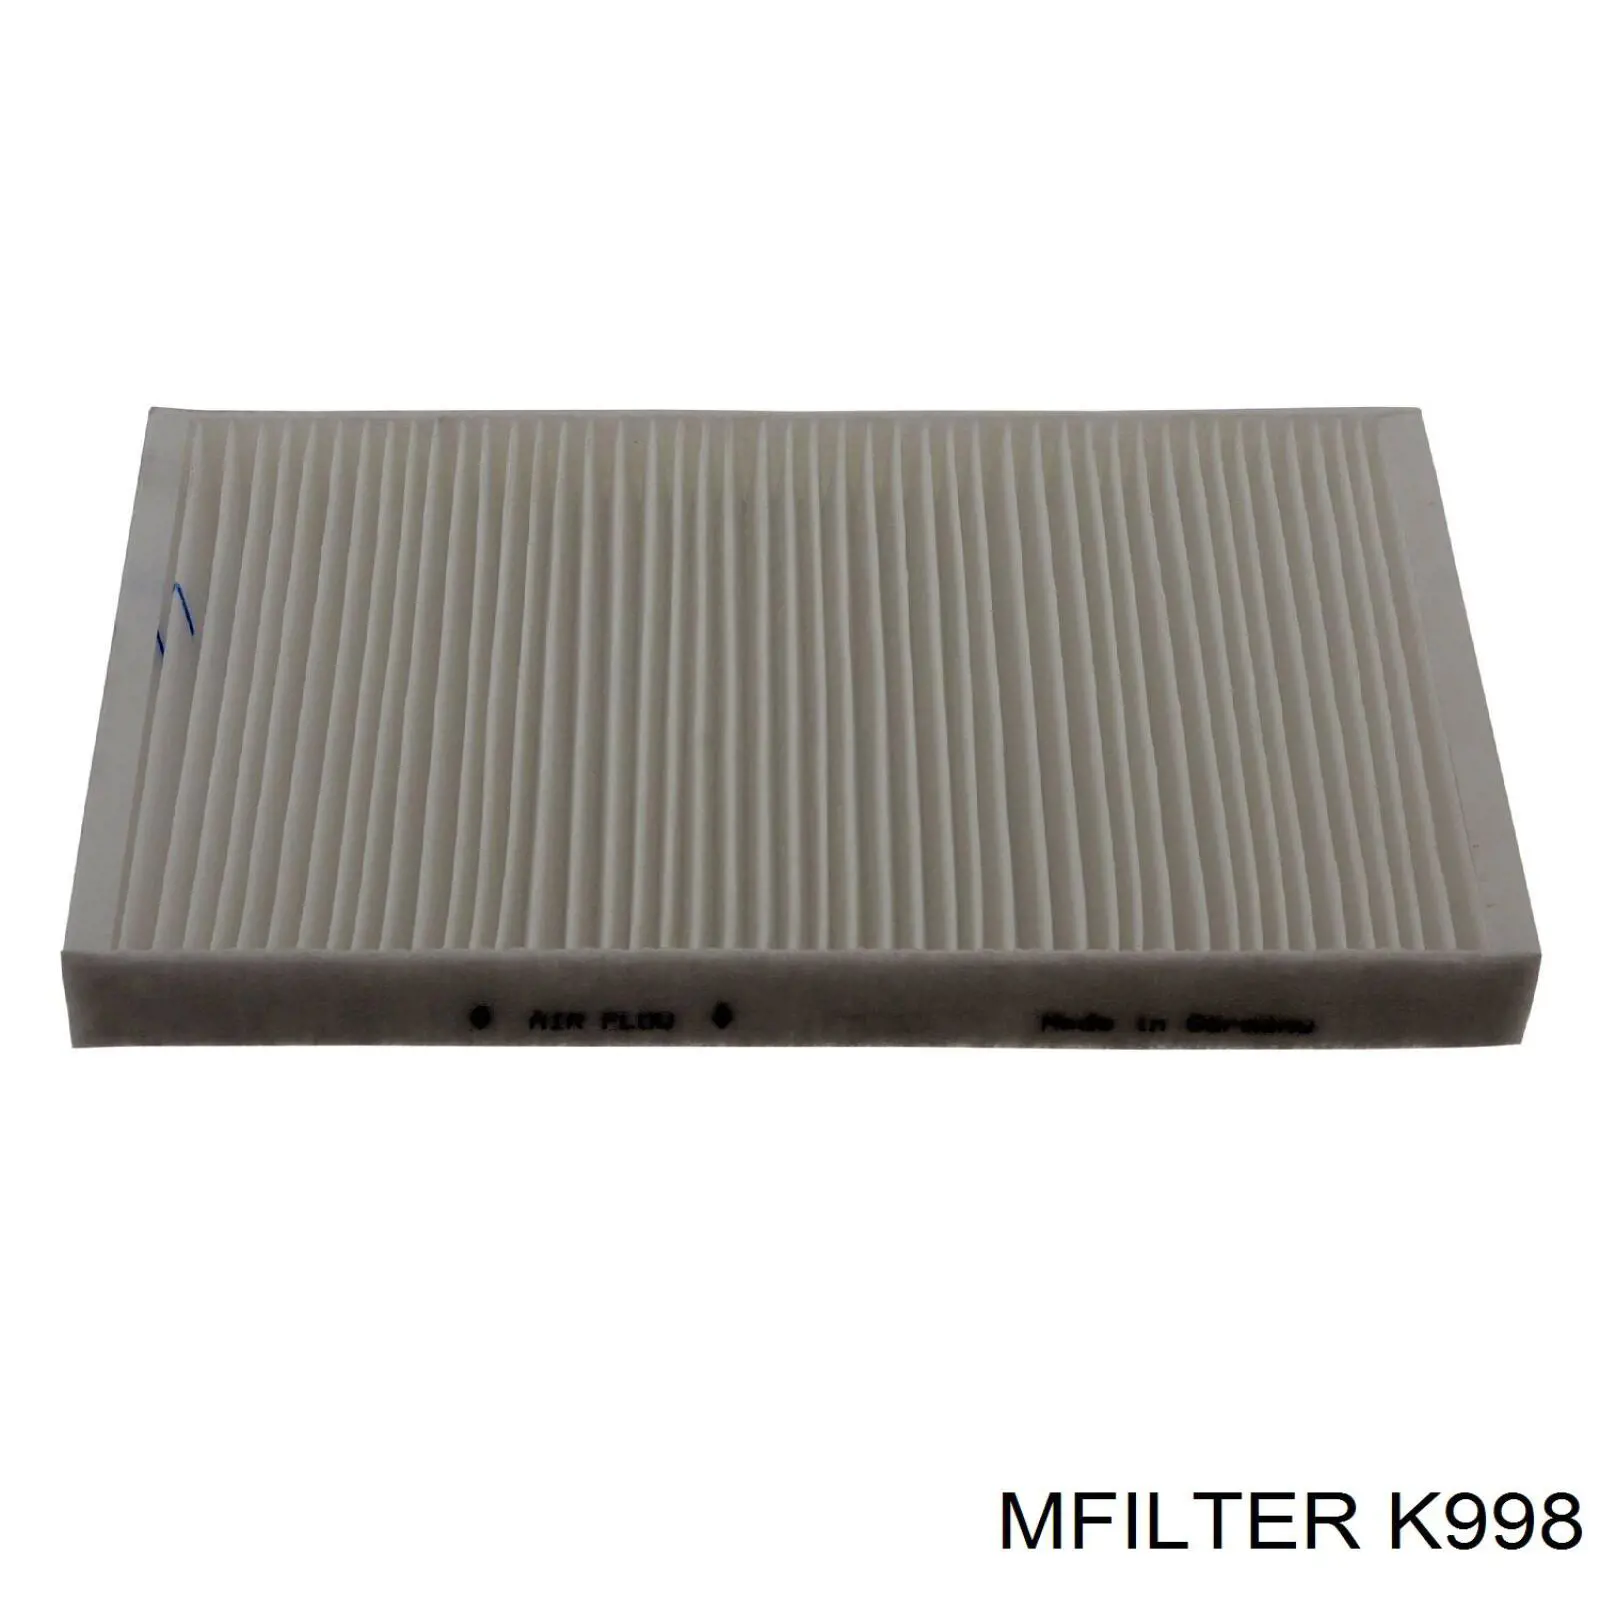 K998 Mfilter filtro habitáculo